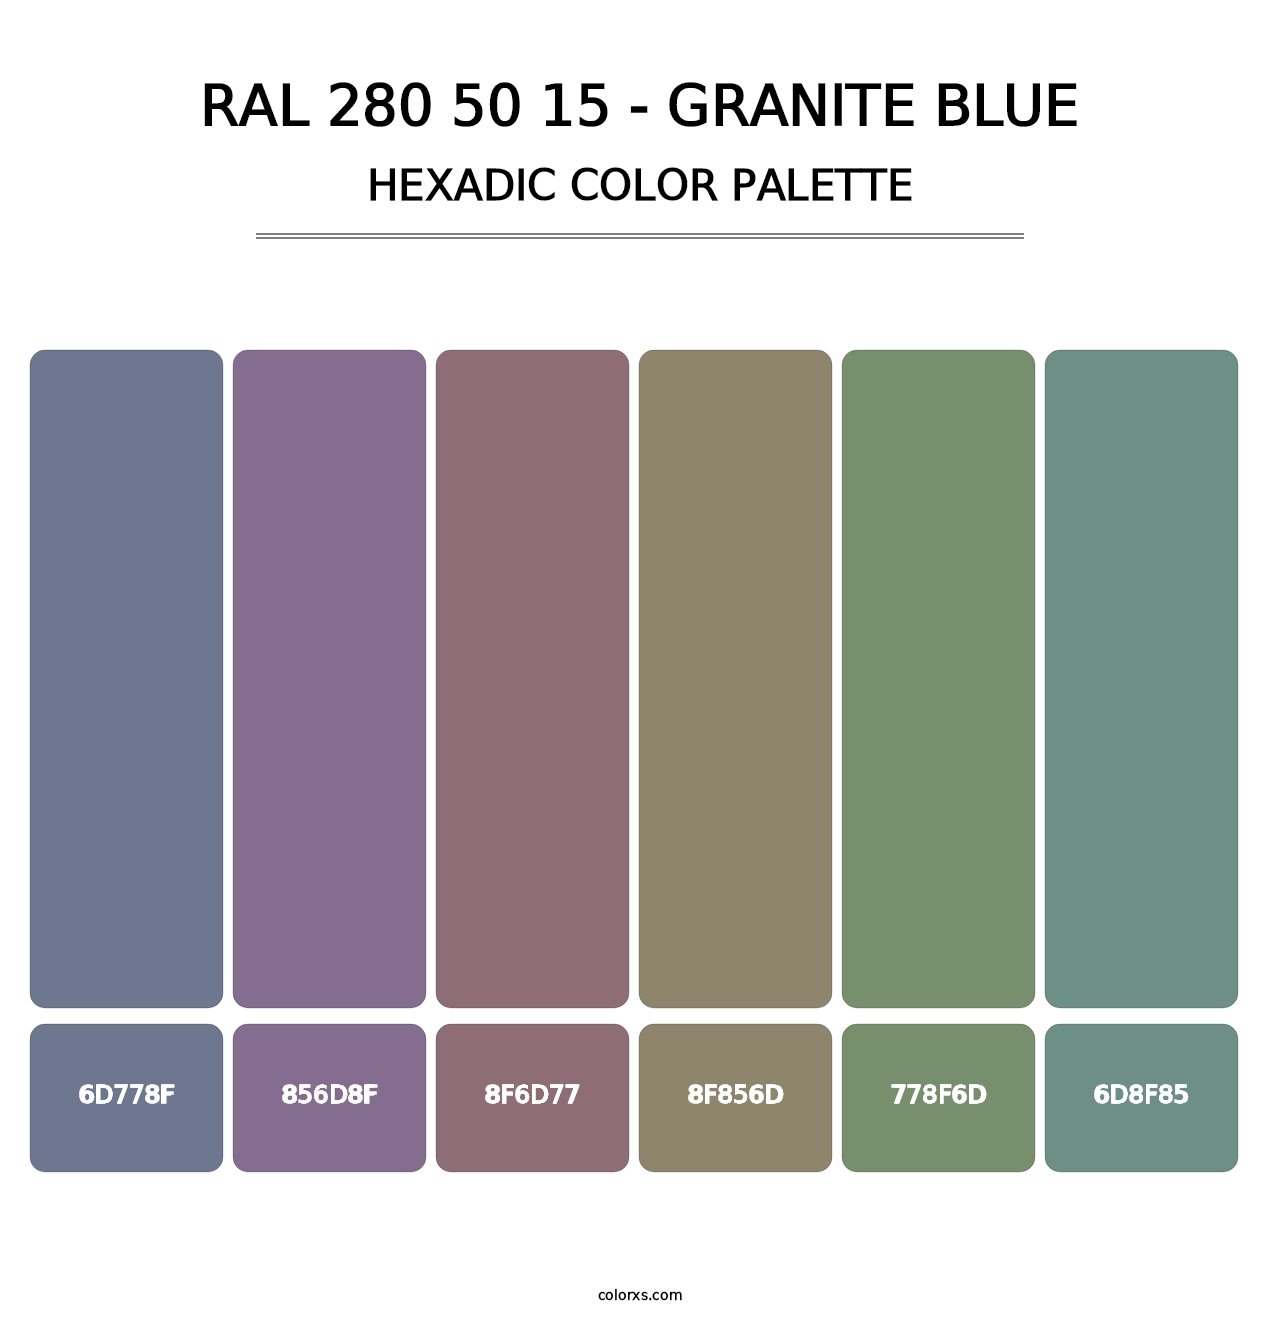 RAL 280 50 15 - Granite Blue - Hexadic Color Palette